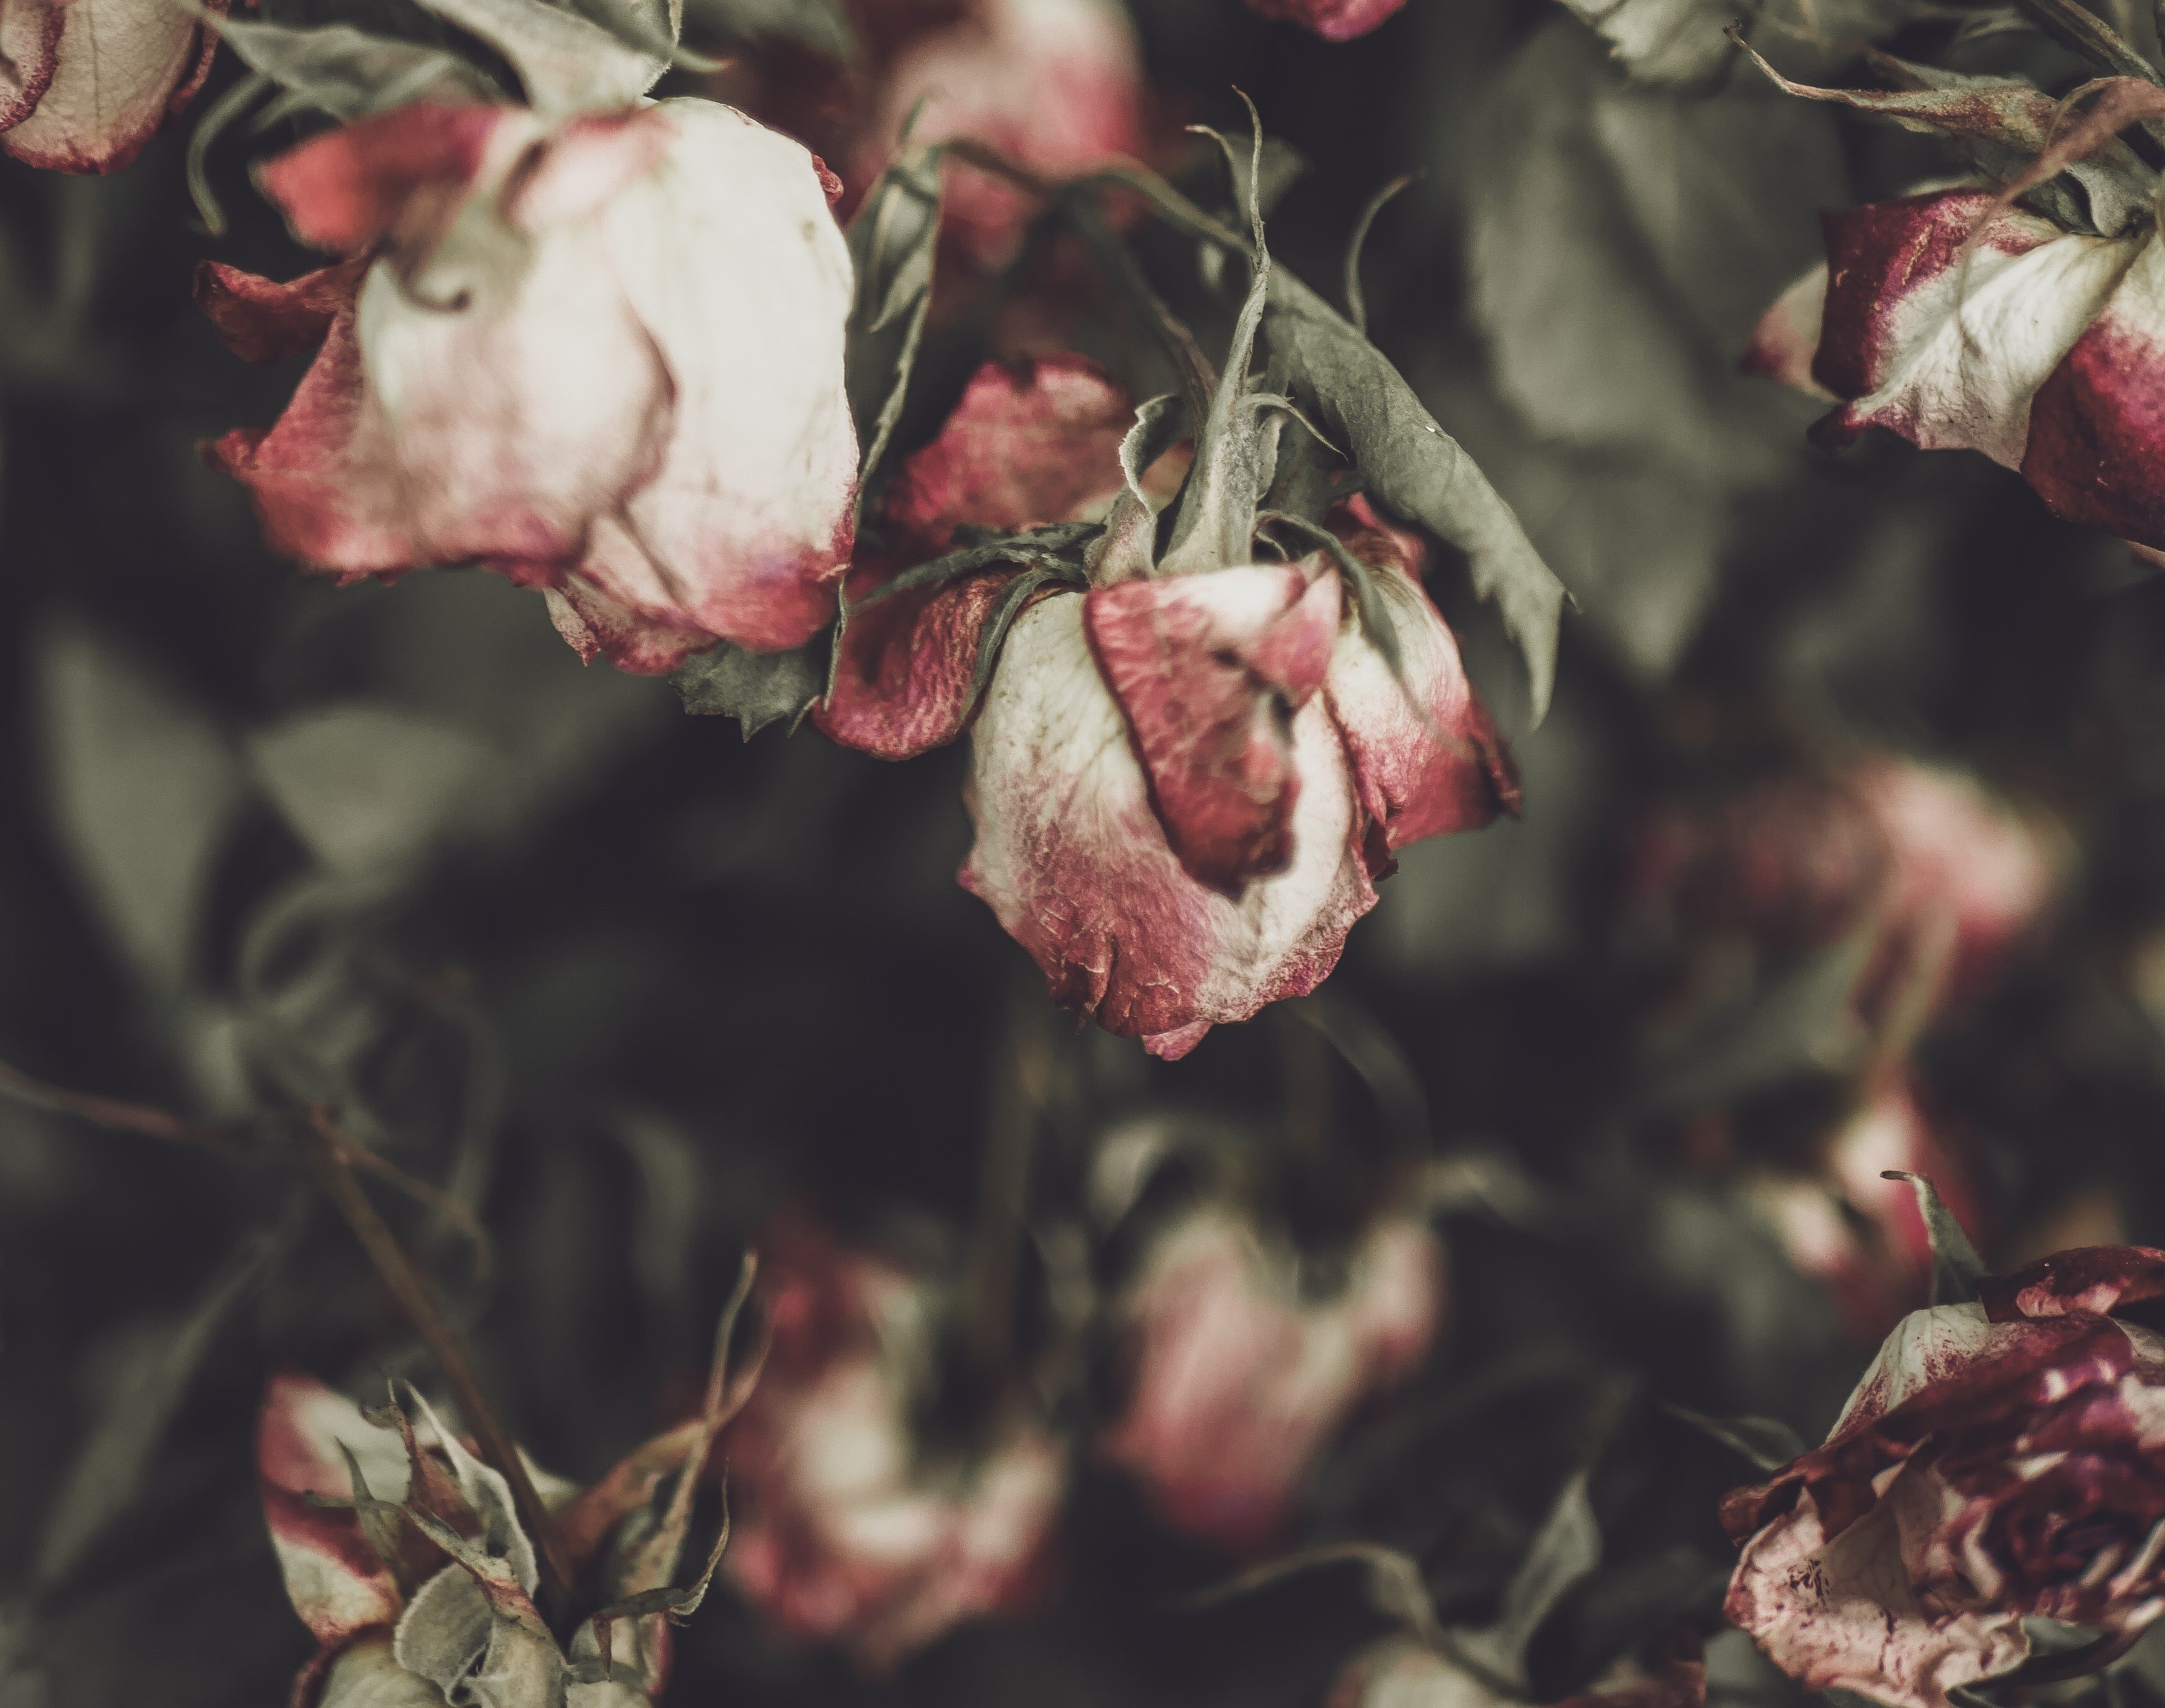 Agatha war schockiert, als sie ihre geliebten Rosen zerstört vorfand. | Quelle: Unsplash